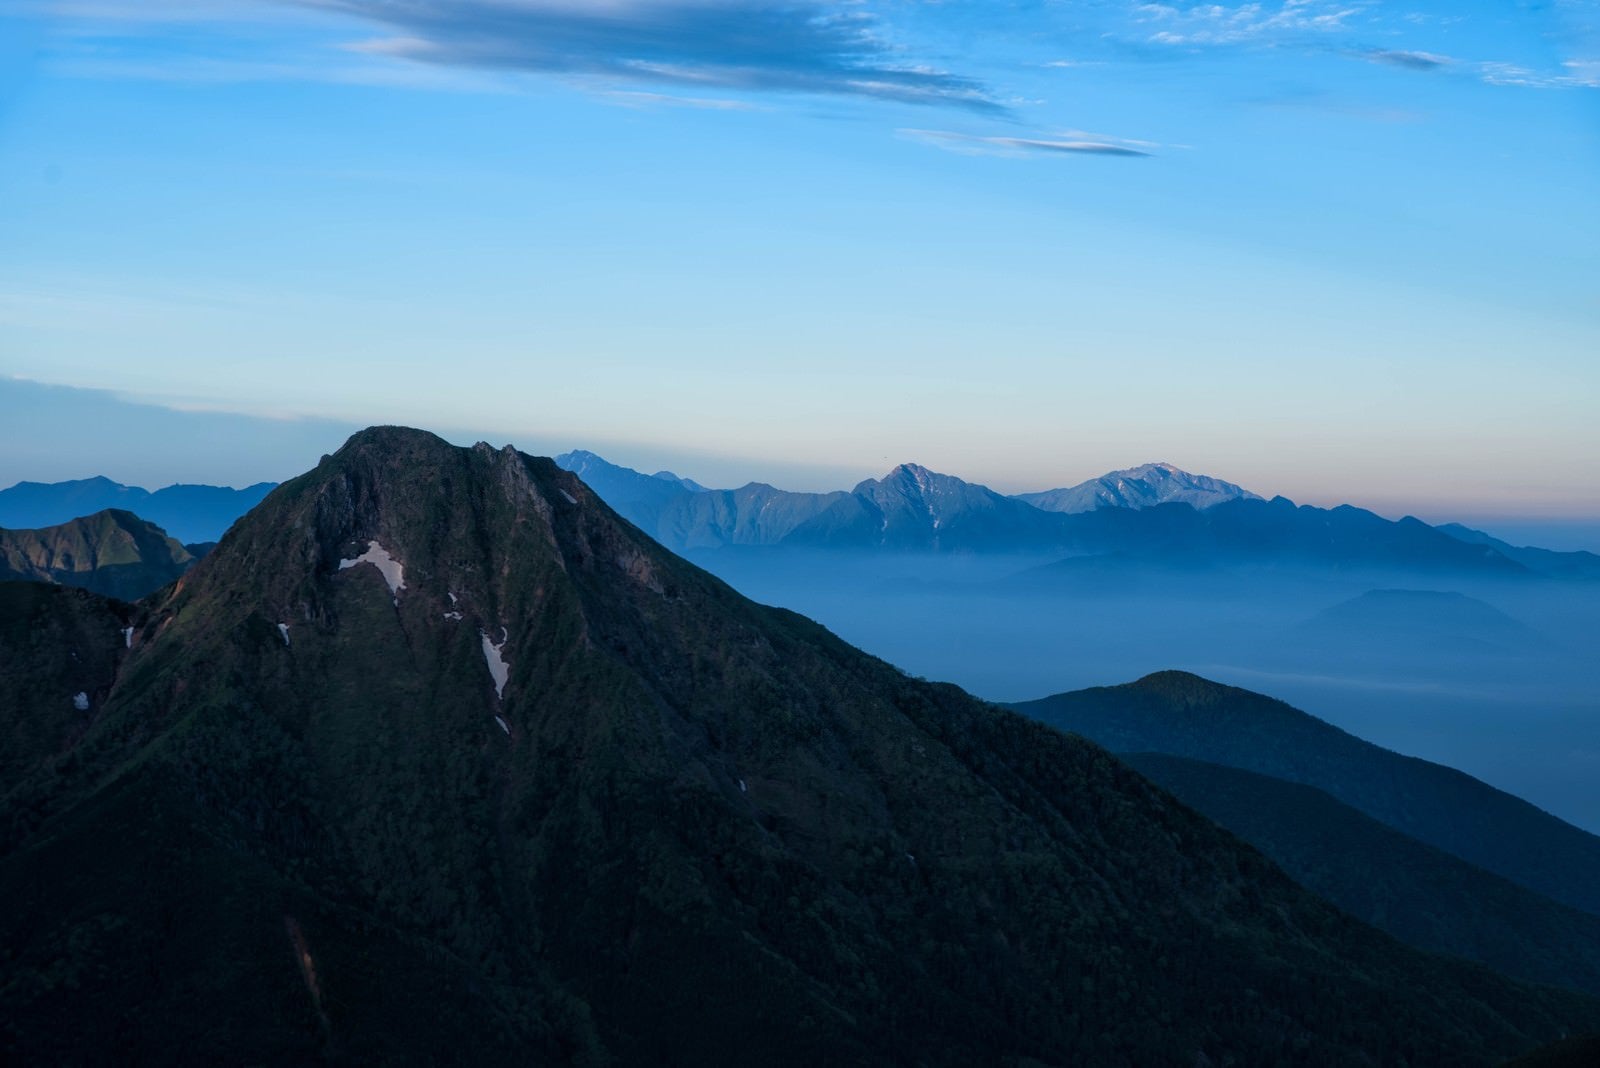 「阿弥陀岳と霞がかる南アルプス」の写真